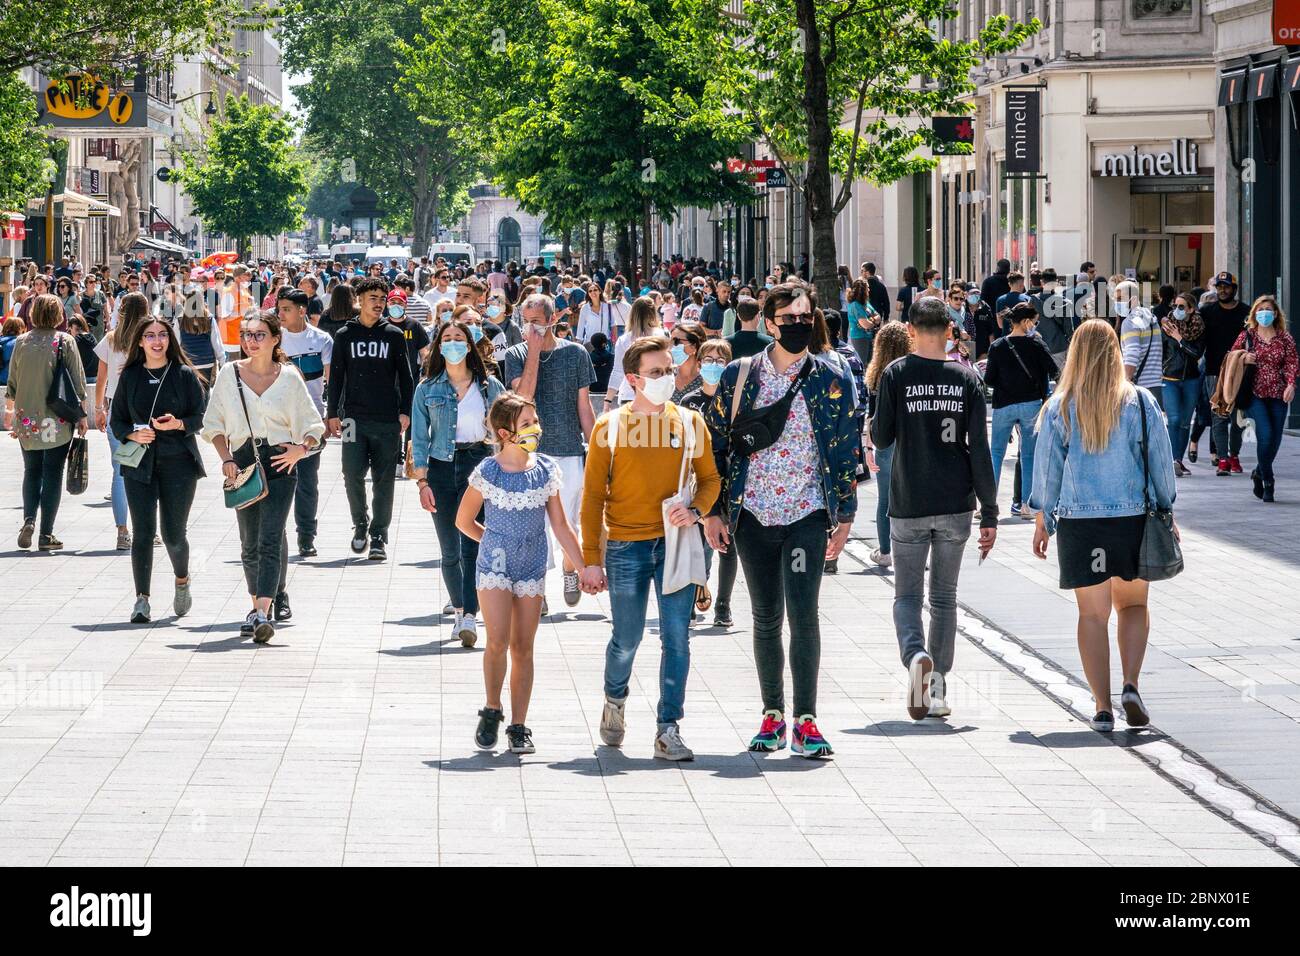 Lyon Francia, 16 de mayo de 2020 : personas que usan máscaras en el primer fin de semana del desencierro en Lyon Francia Foto de stock